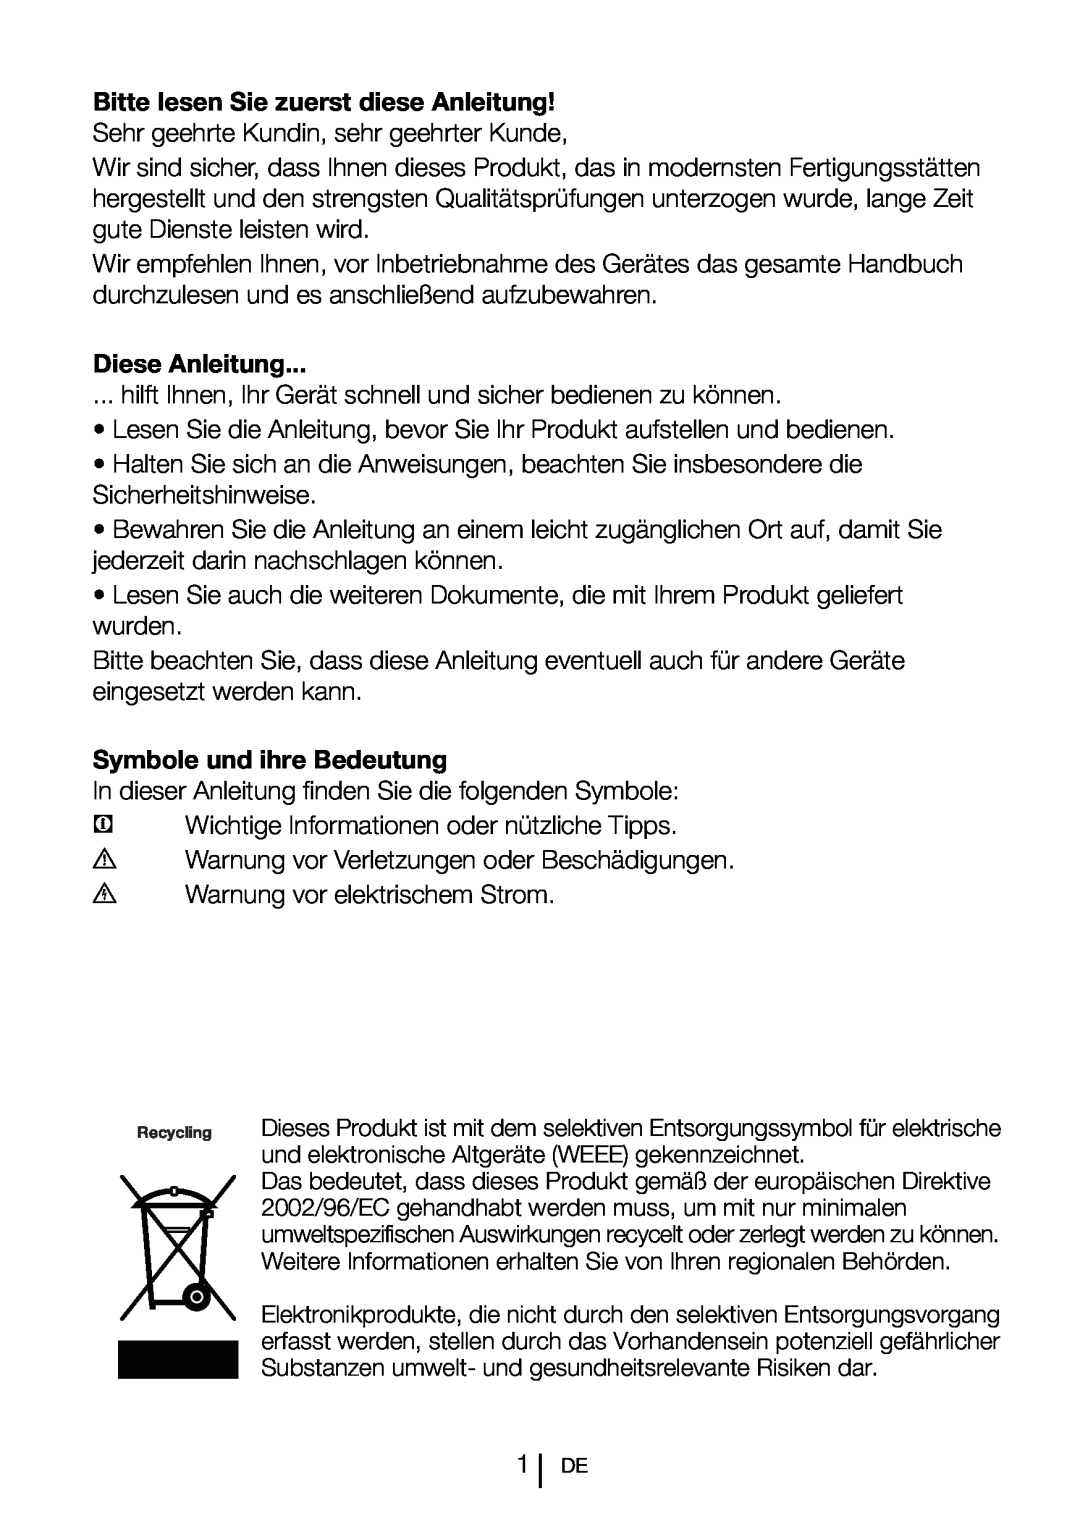 Blomberg SND 9681 XD operating instructions Diese Anleitung, Symbole und ihre Bedeutung 